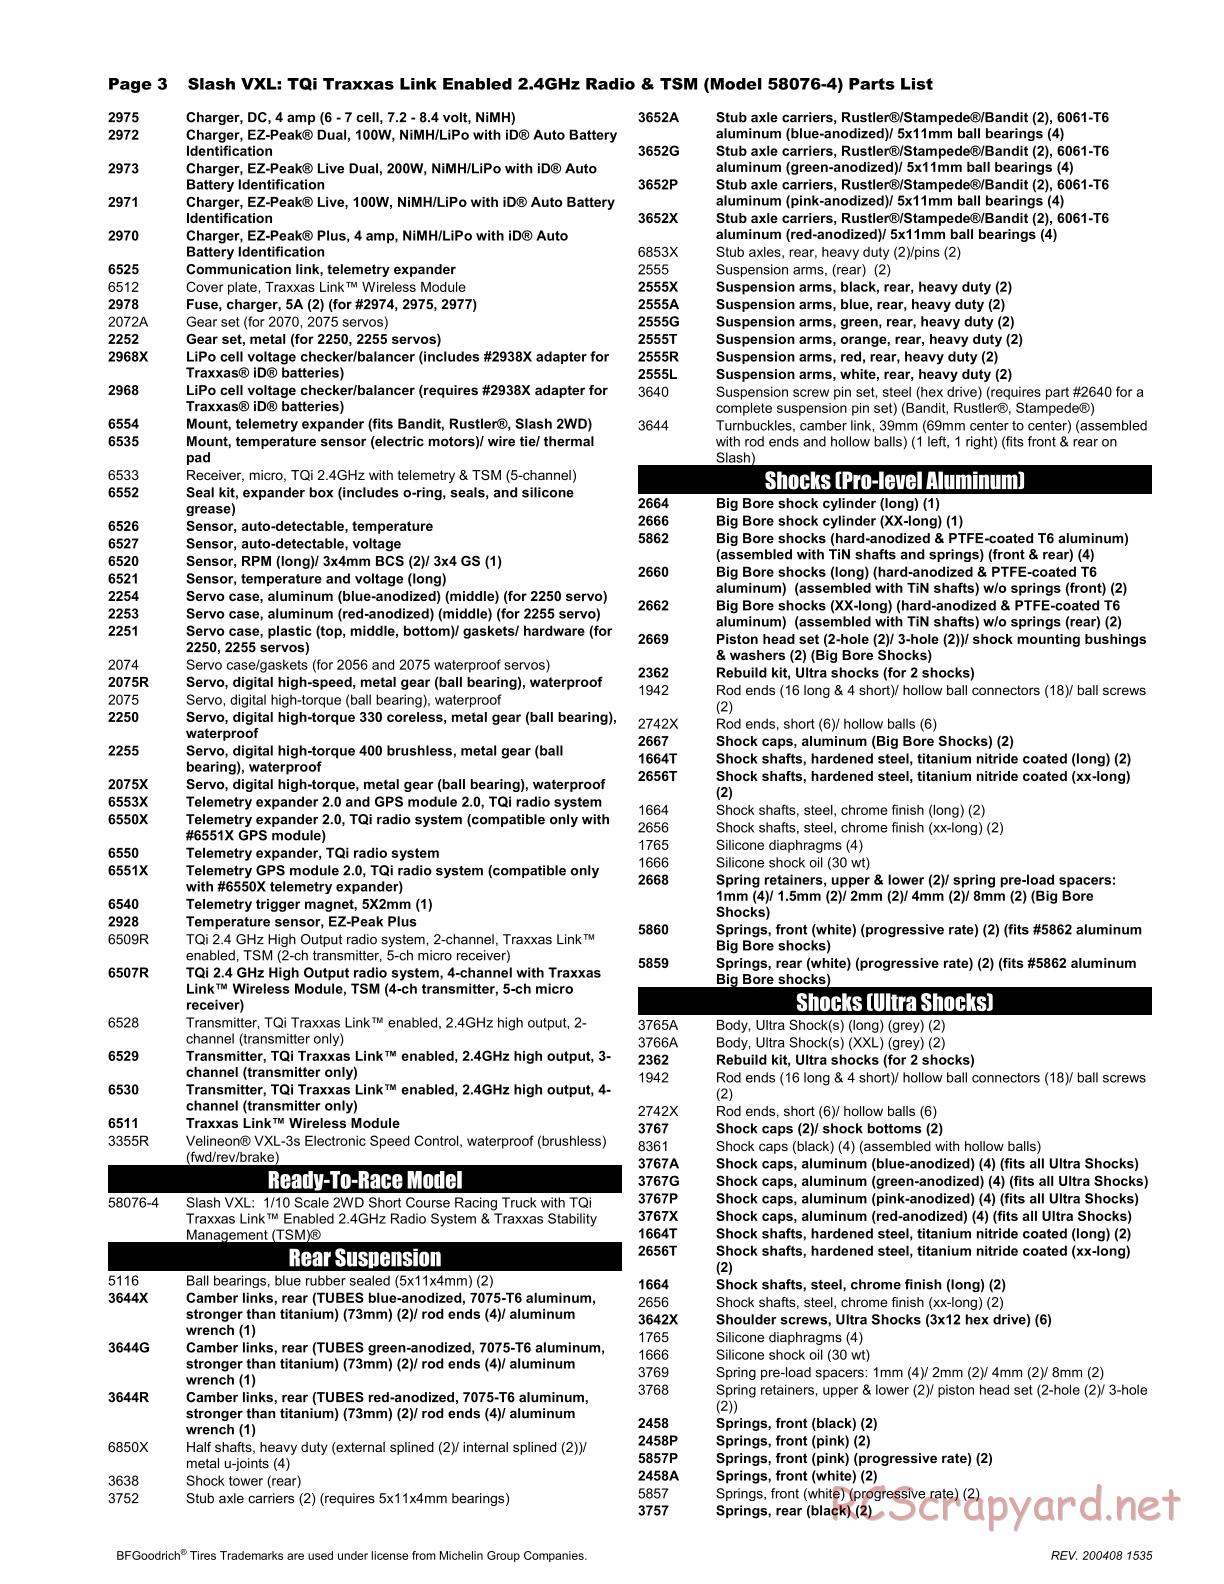 Traxxas - Slash VXL TSM 2WD - Parts List - Page 3